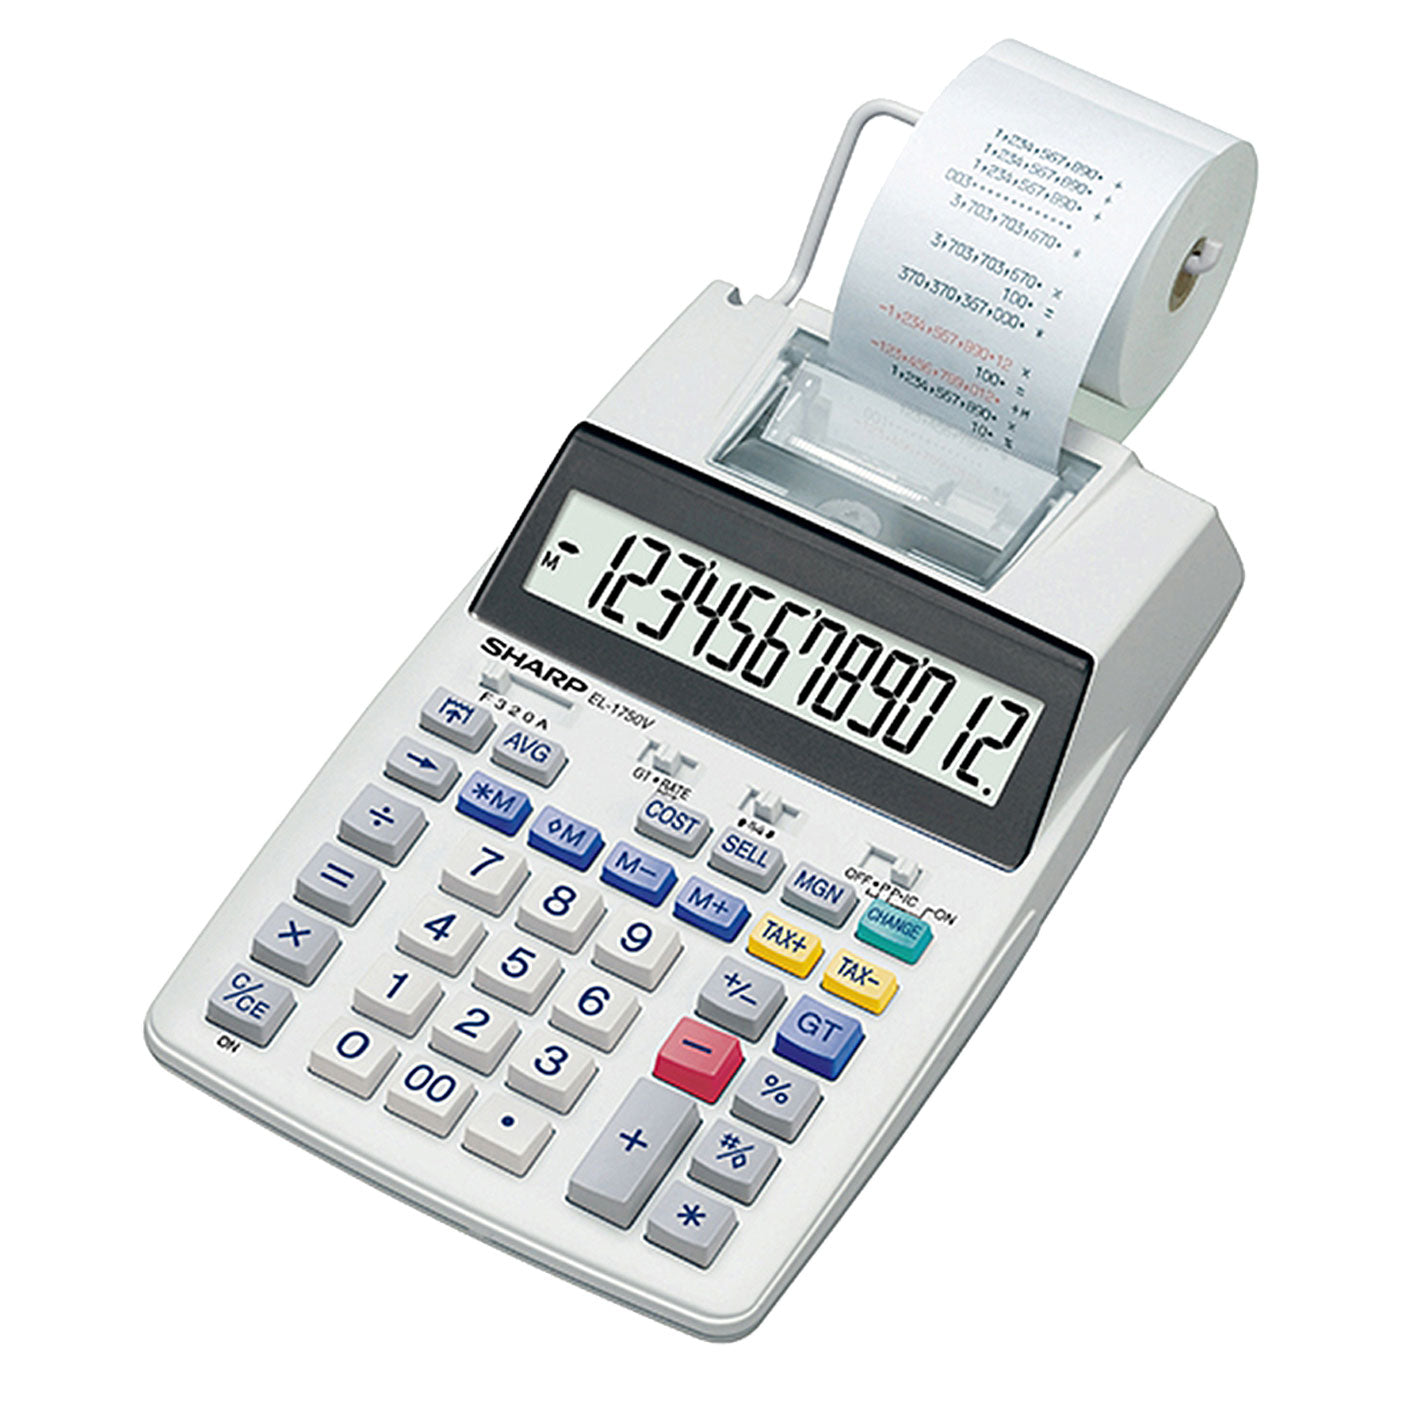 Sharp EL1750V Printing Calculator - School Depot